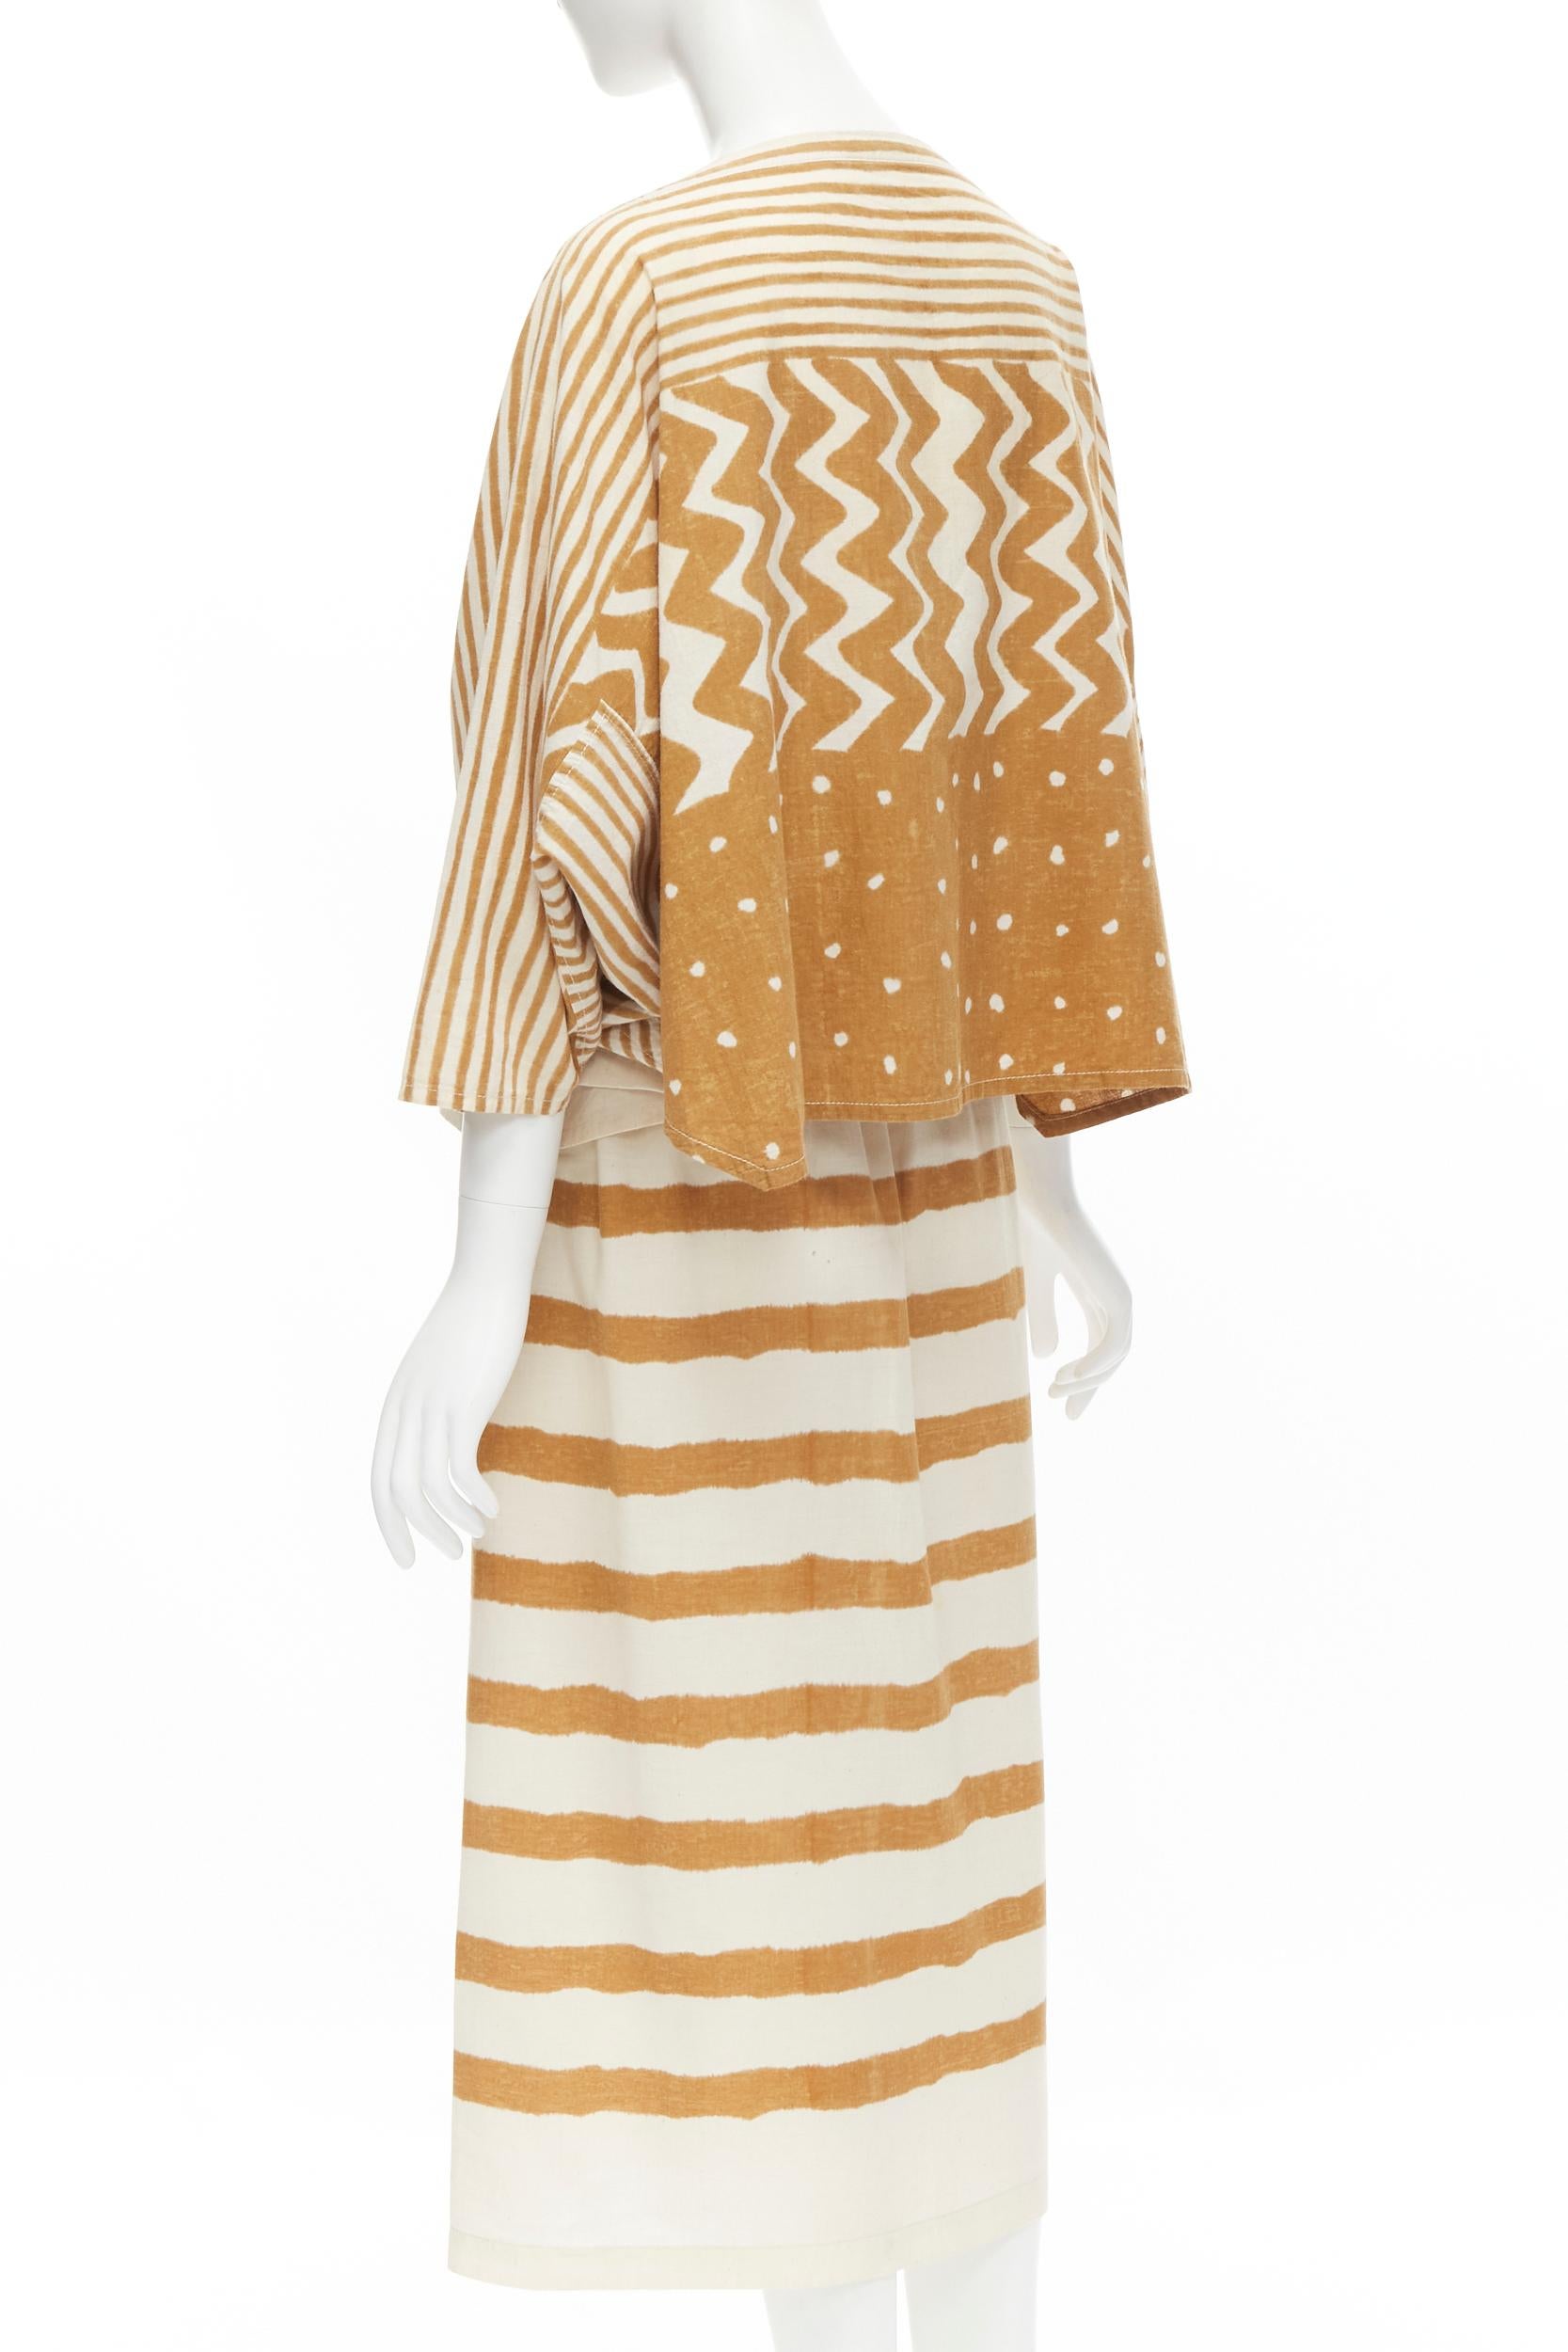 Issey Miyake - Ensemble jupe et haut boxy vintage à rayures tribales jaunes et beiges, années 1980 Pour femmes en vente